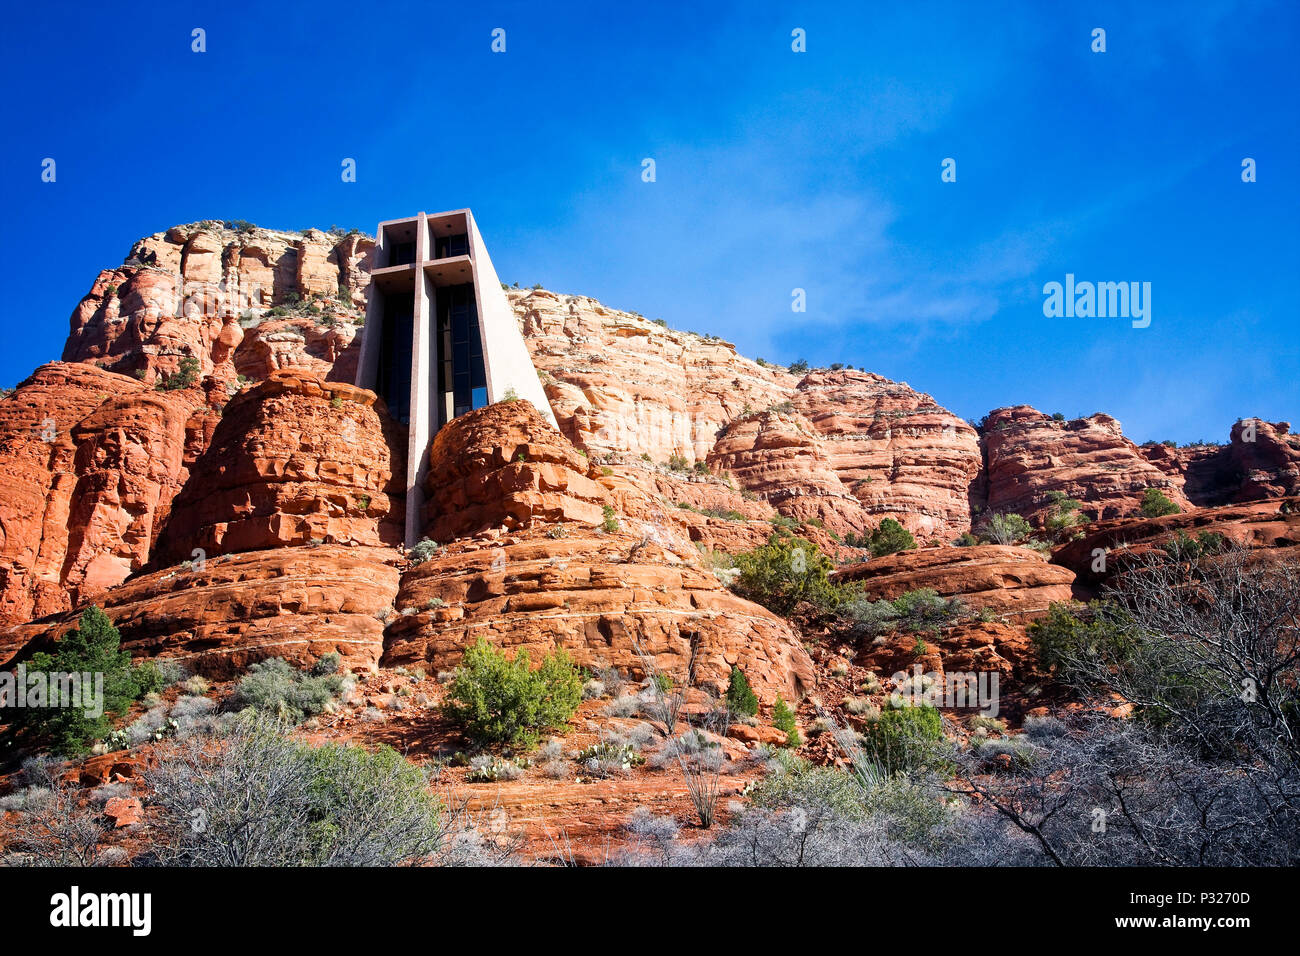 The Chapel of the Holy Cross built into the red rocks of Sedona, Arizona. Stock Photo